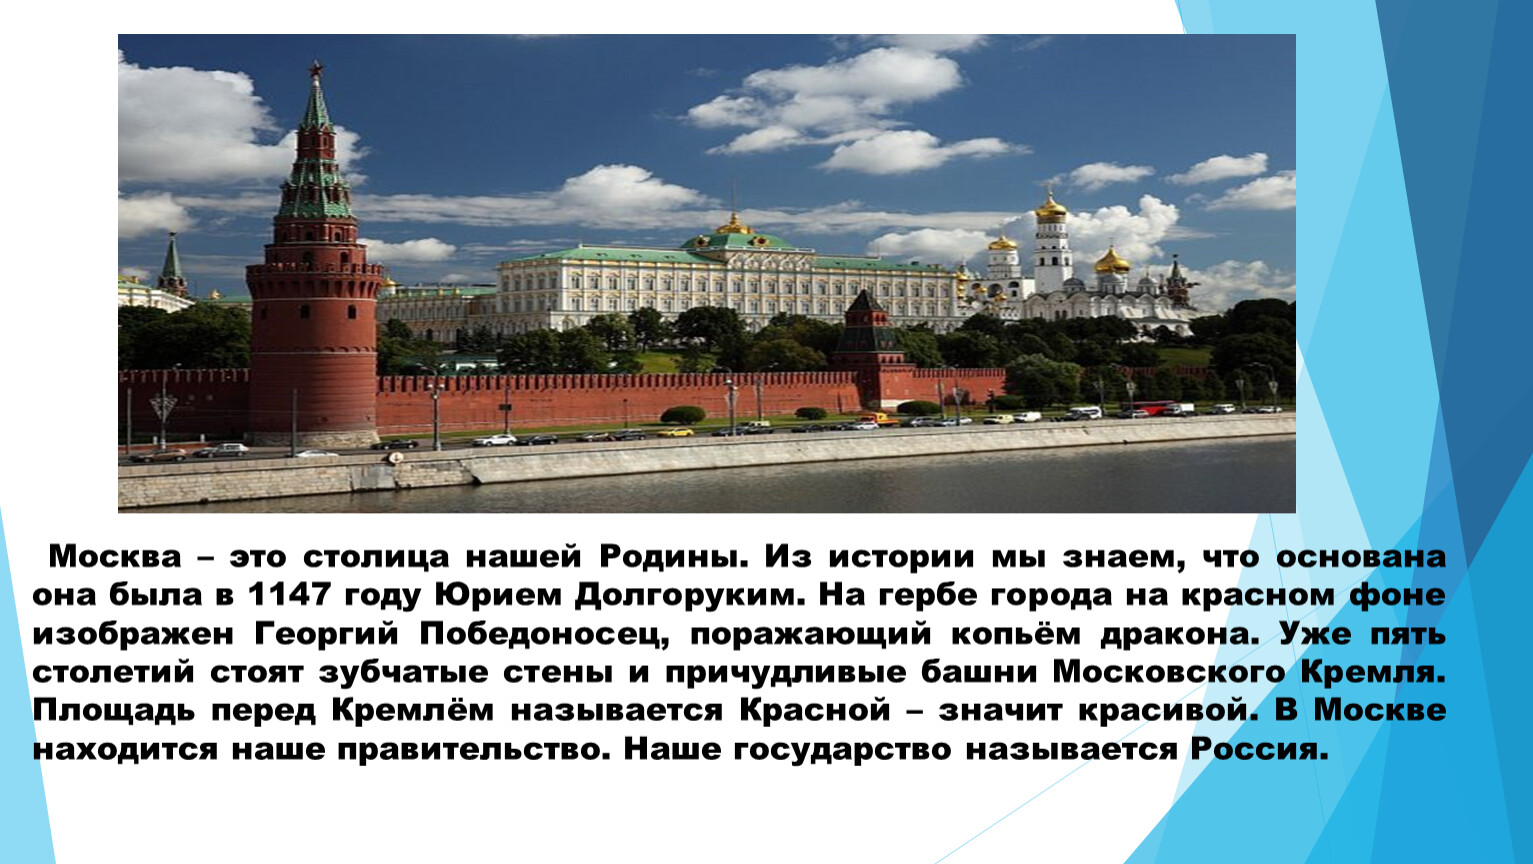 Рекомендации для родителей Москва столица нашей Родины